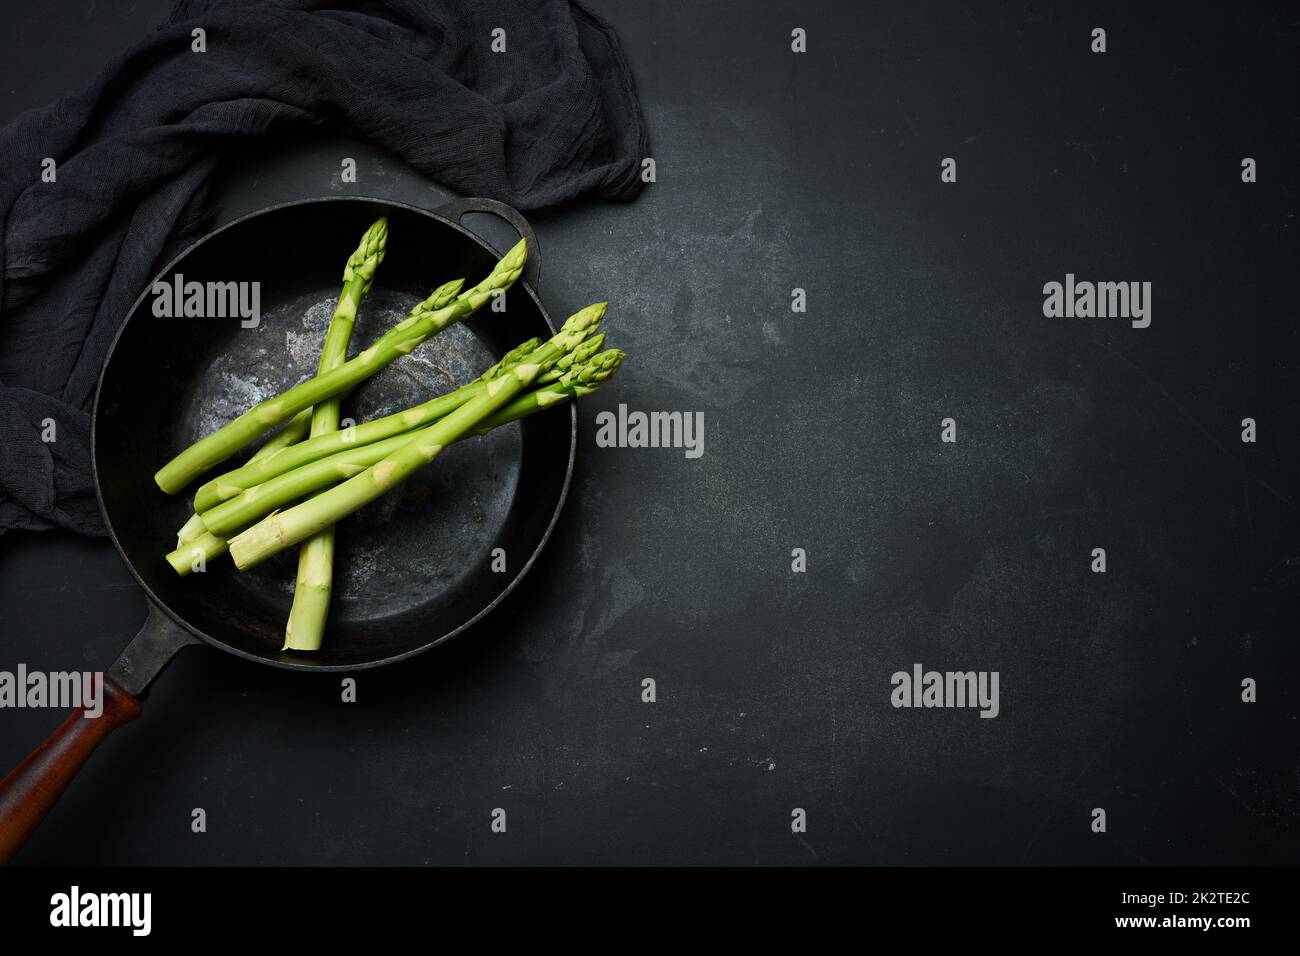 asperges vertes fraîches dans une casserole ronde en fonte sur une table noire Banque D'Images